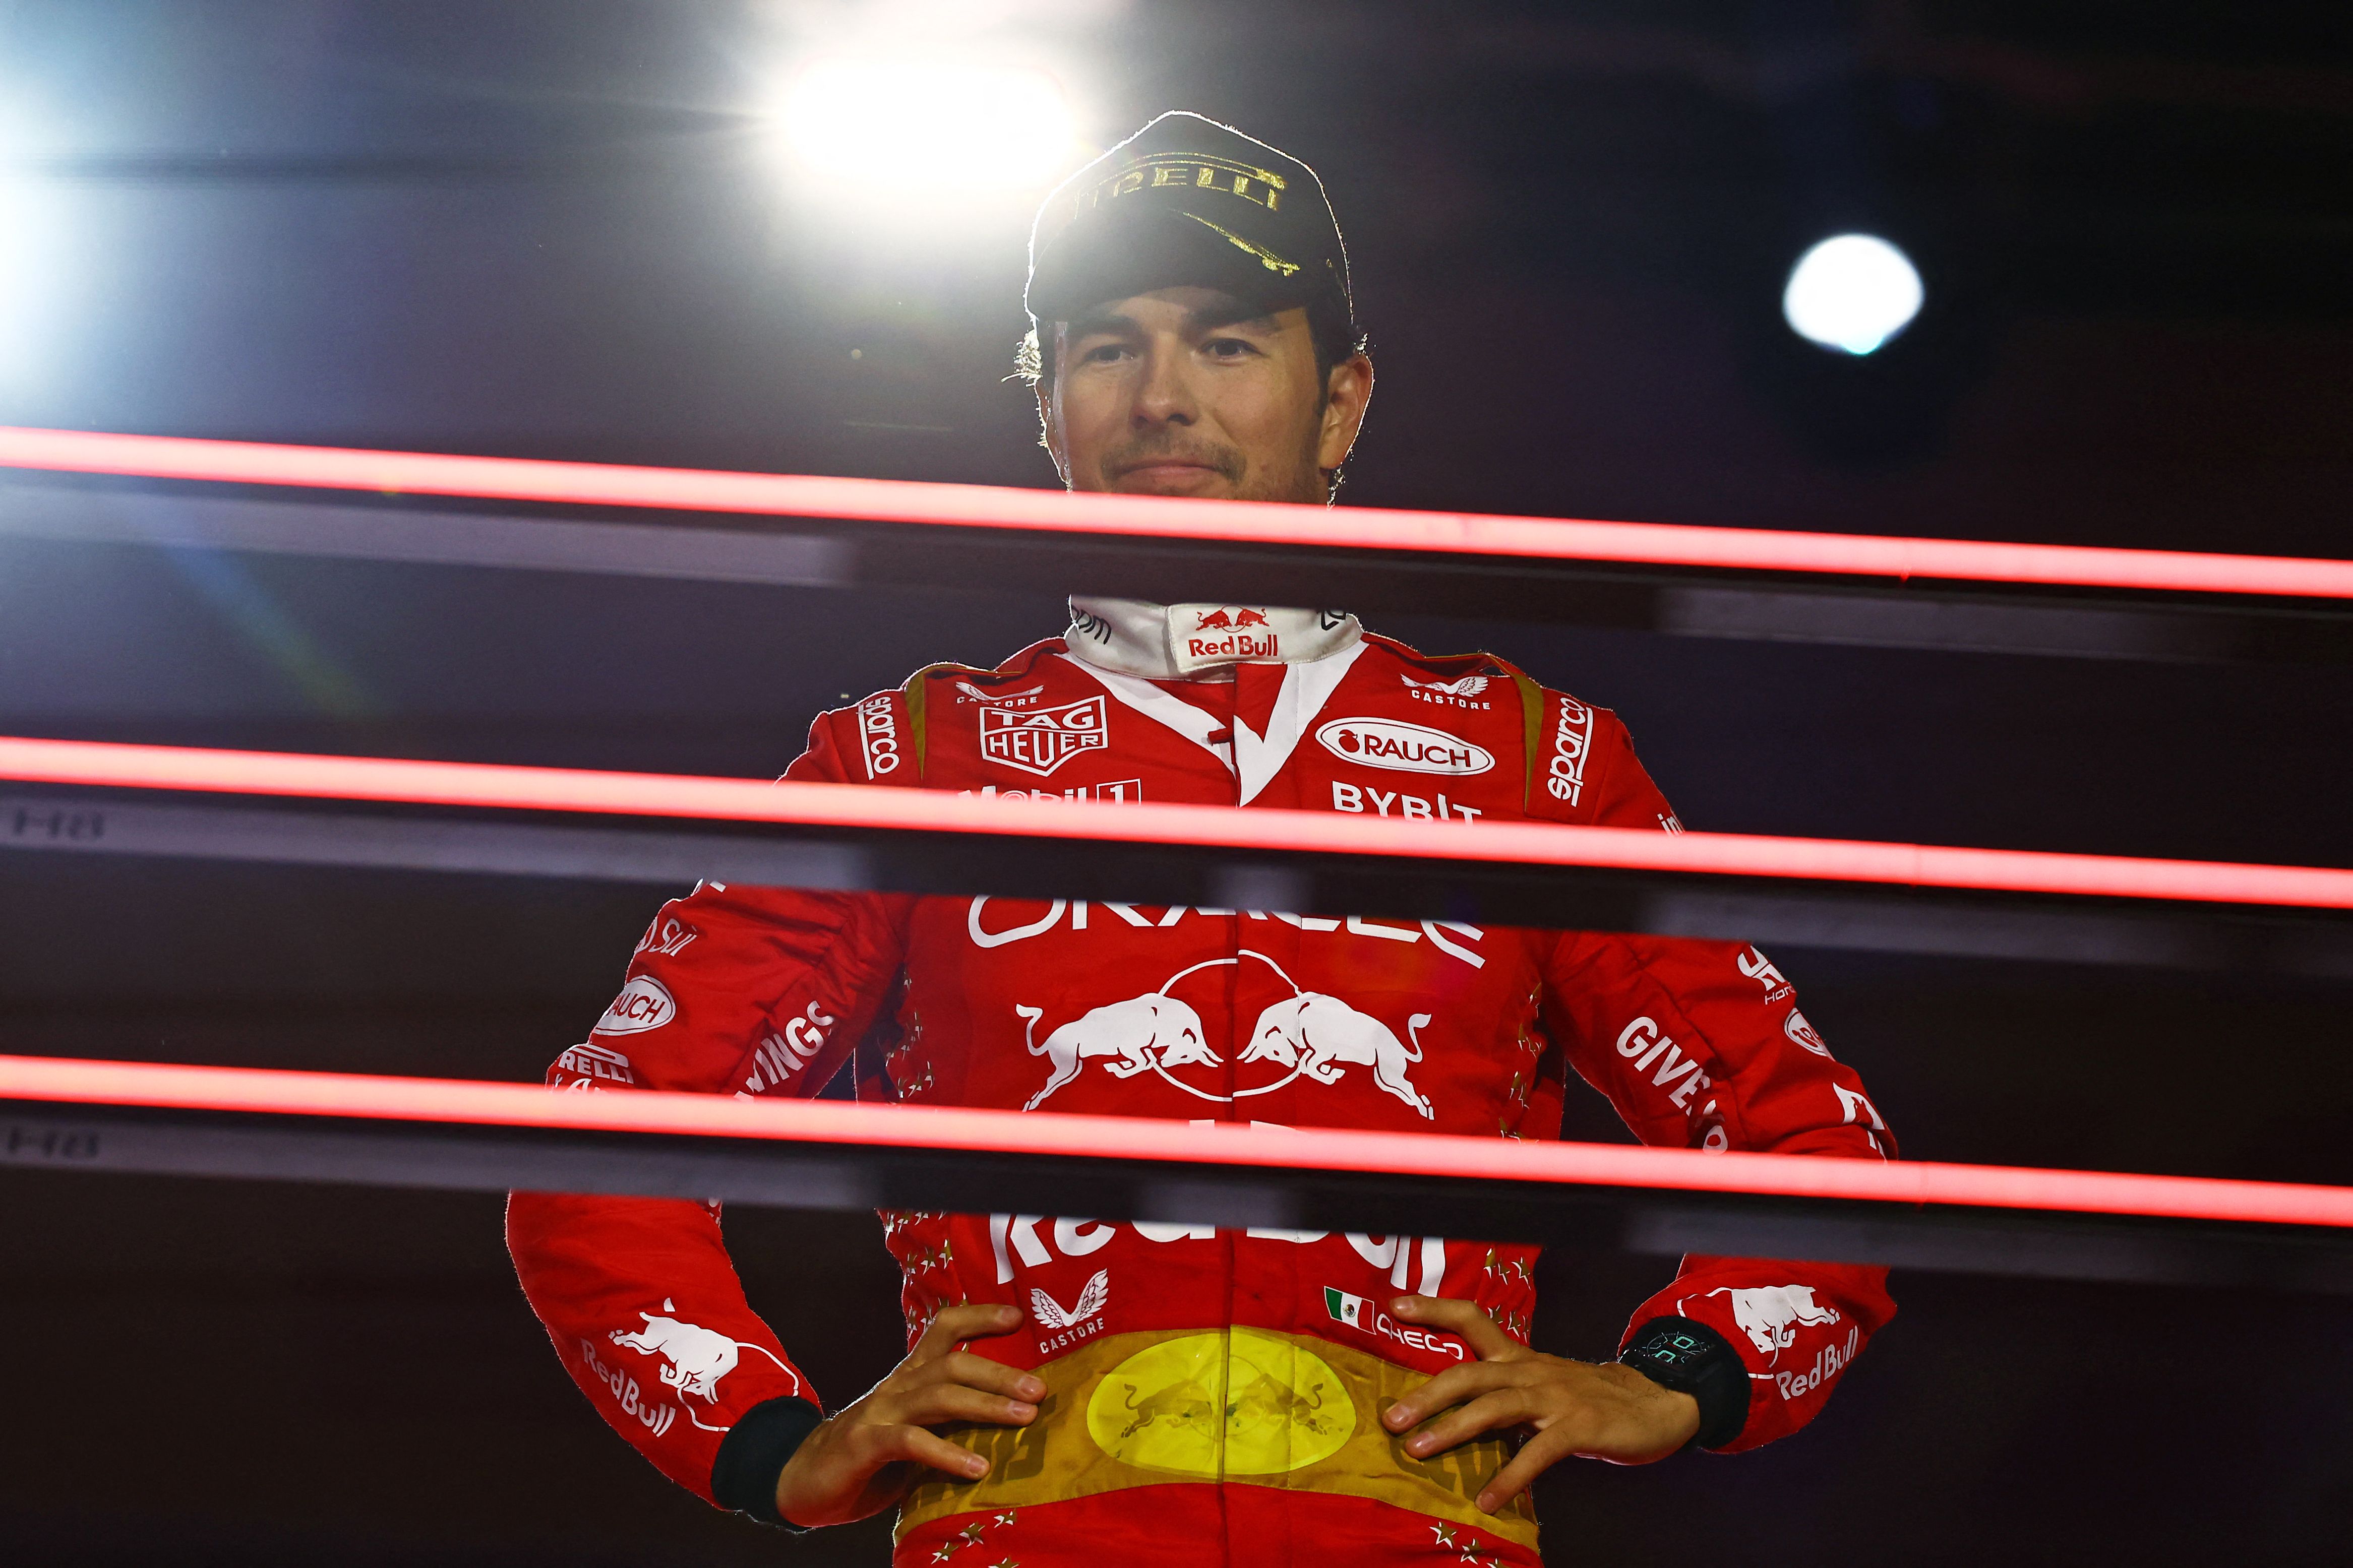 El piloto mexicano de Red Bull, Sergio Perez, tercer lugar de la clasificación, posa en el podio del GP de Las Vegas. (Foto Prensa Libre: AFP)